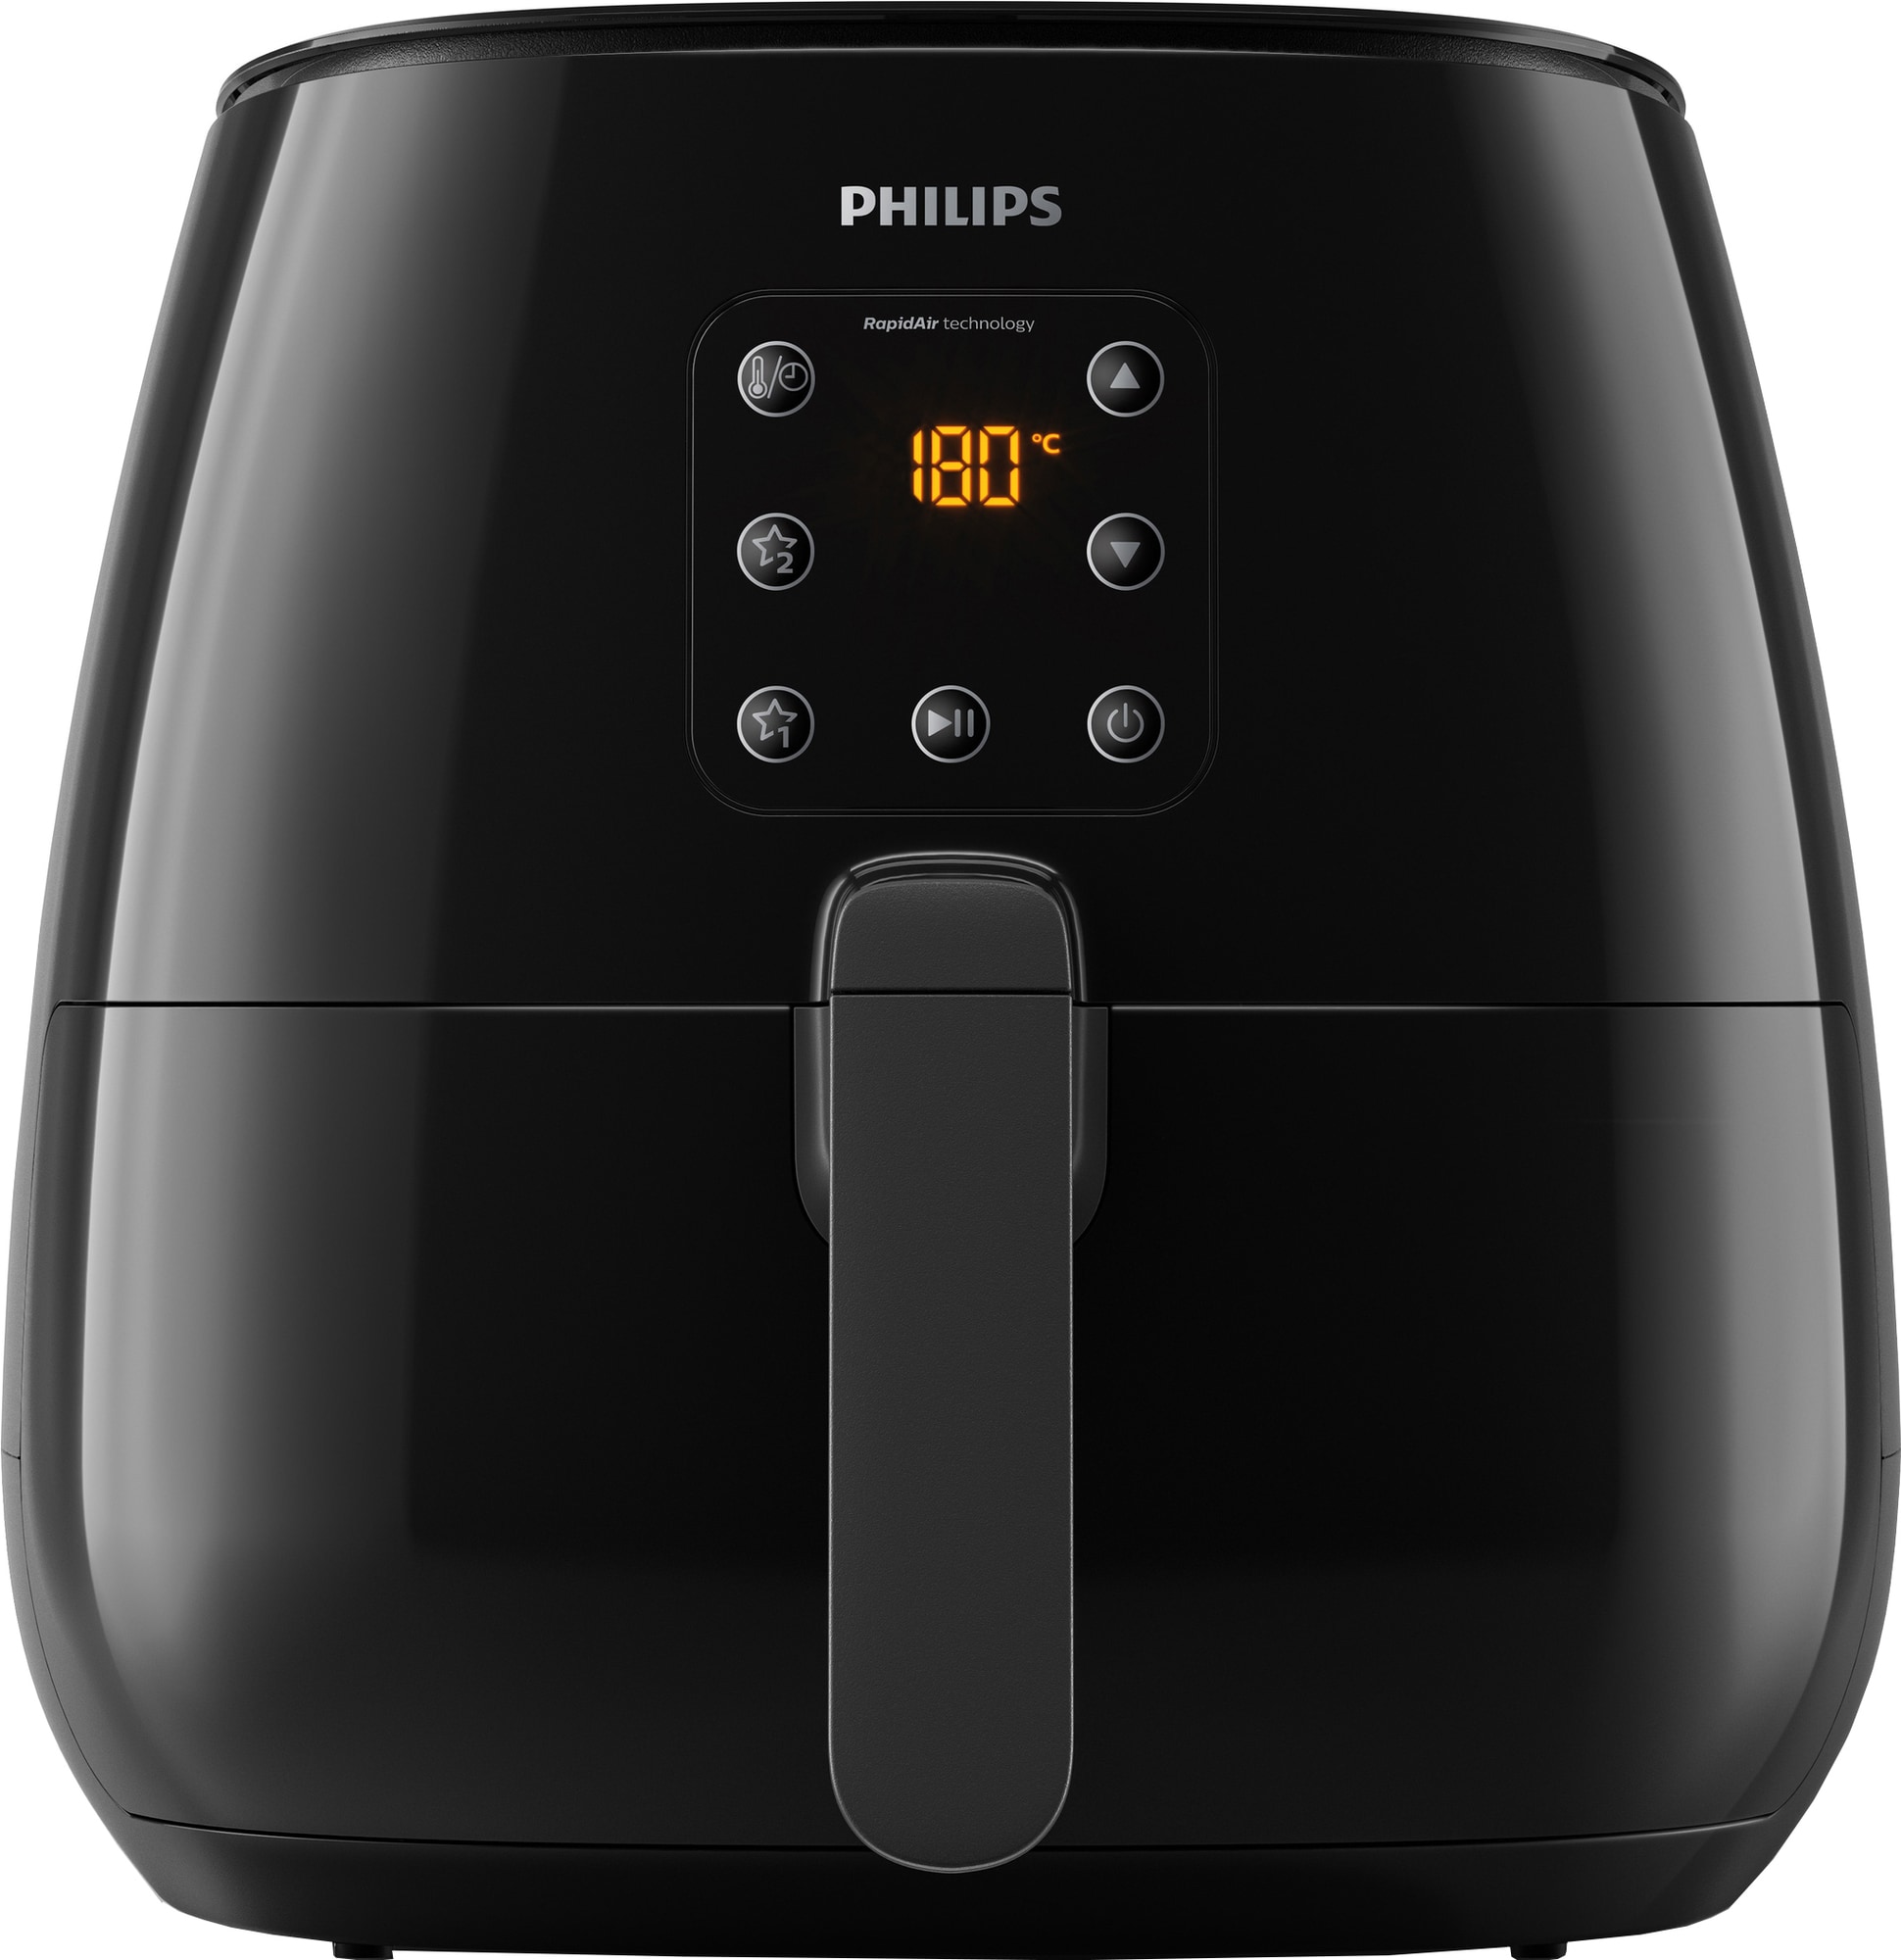 Philips Essential Airfryer XL HD926190 - Elkjøp